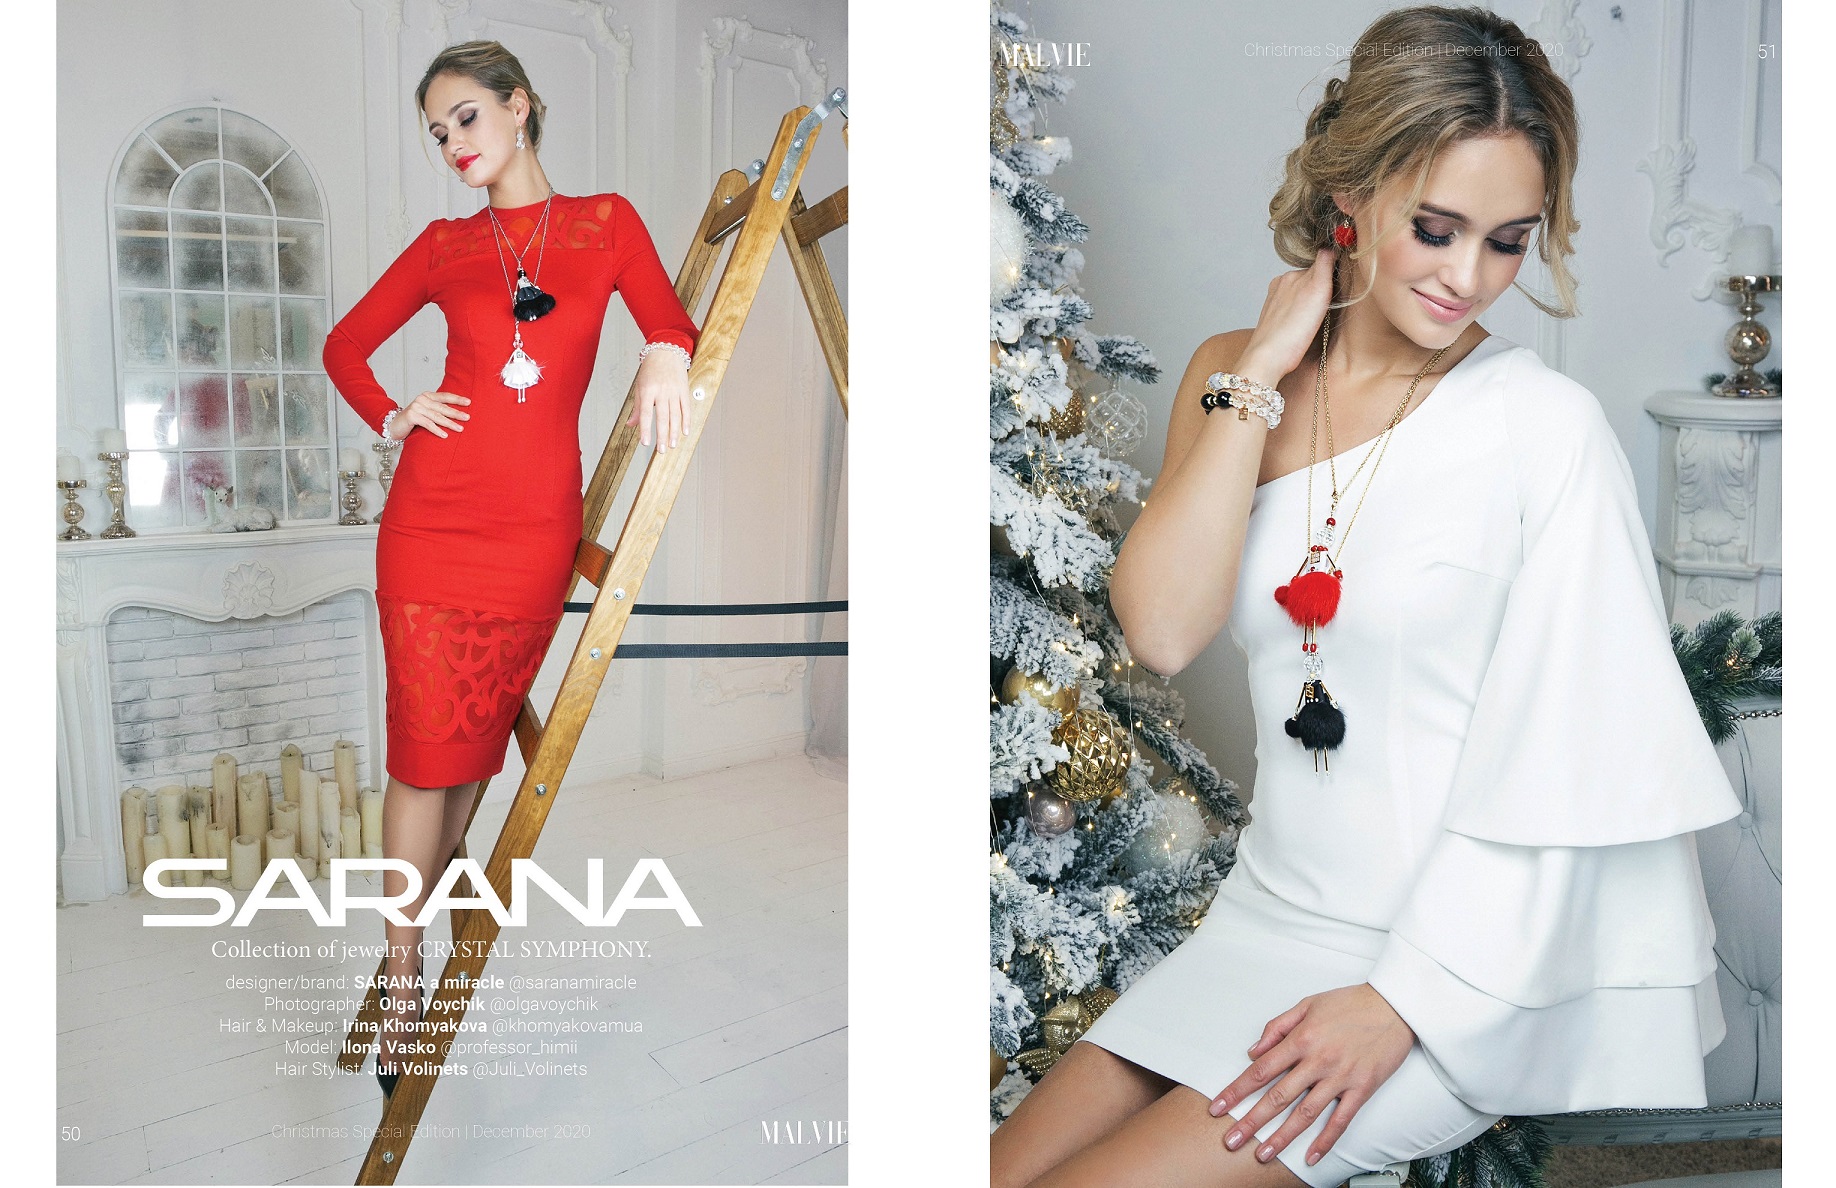 The magic of SARANA jewelry in MALVIE magazine.